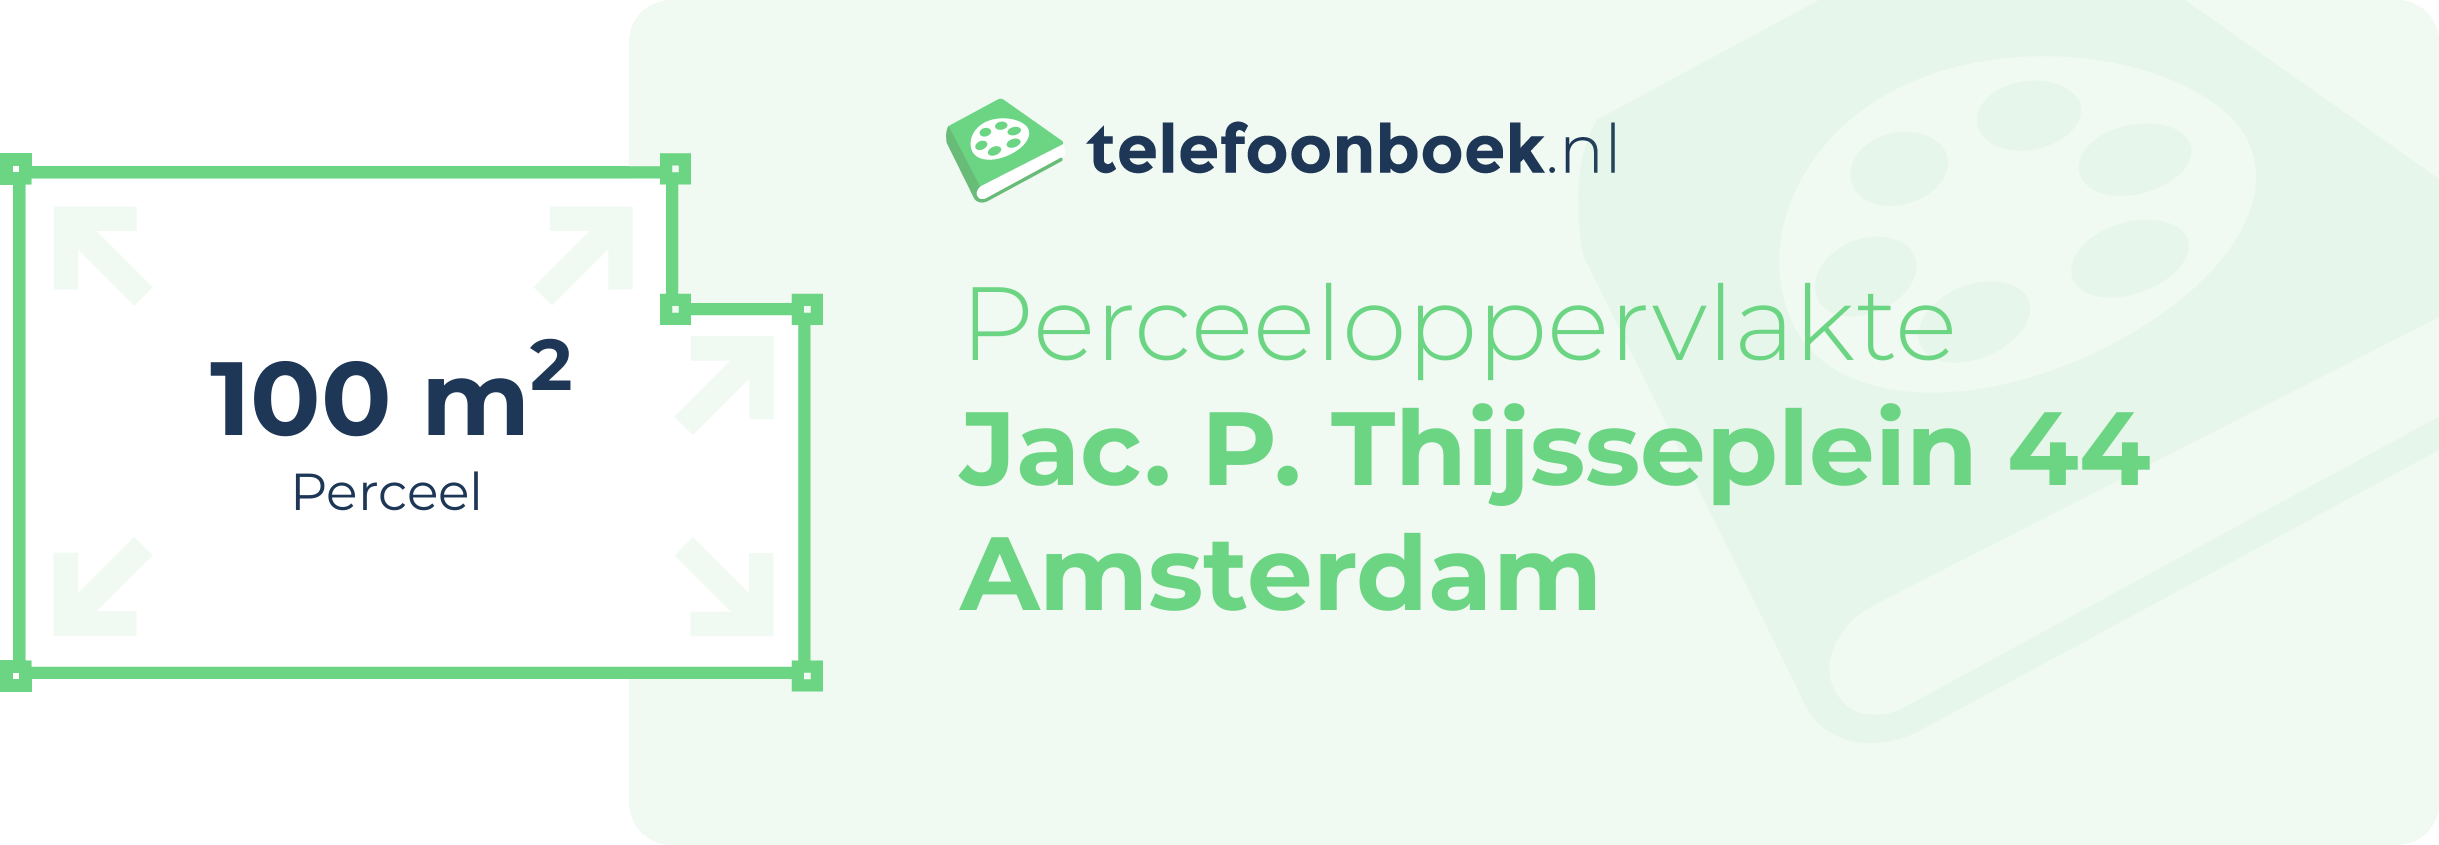 Perceeloppervlakte Jac. P. Thijsseplein 44 Amsterdam